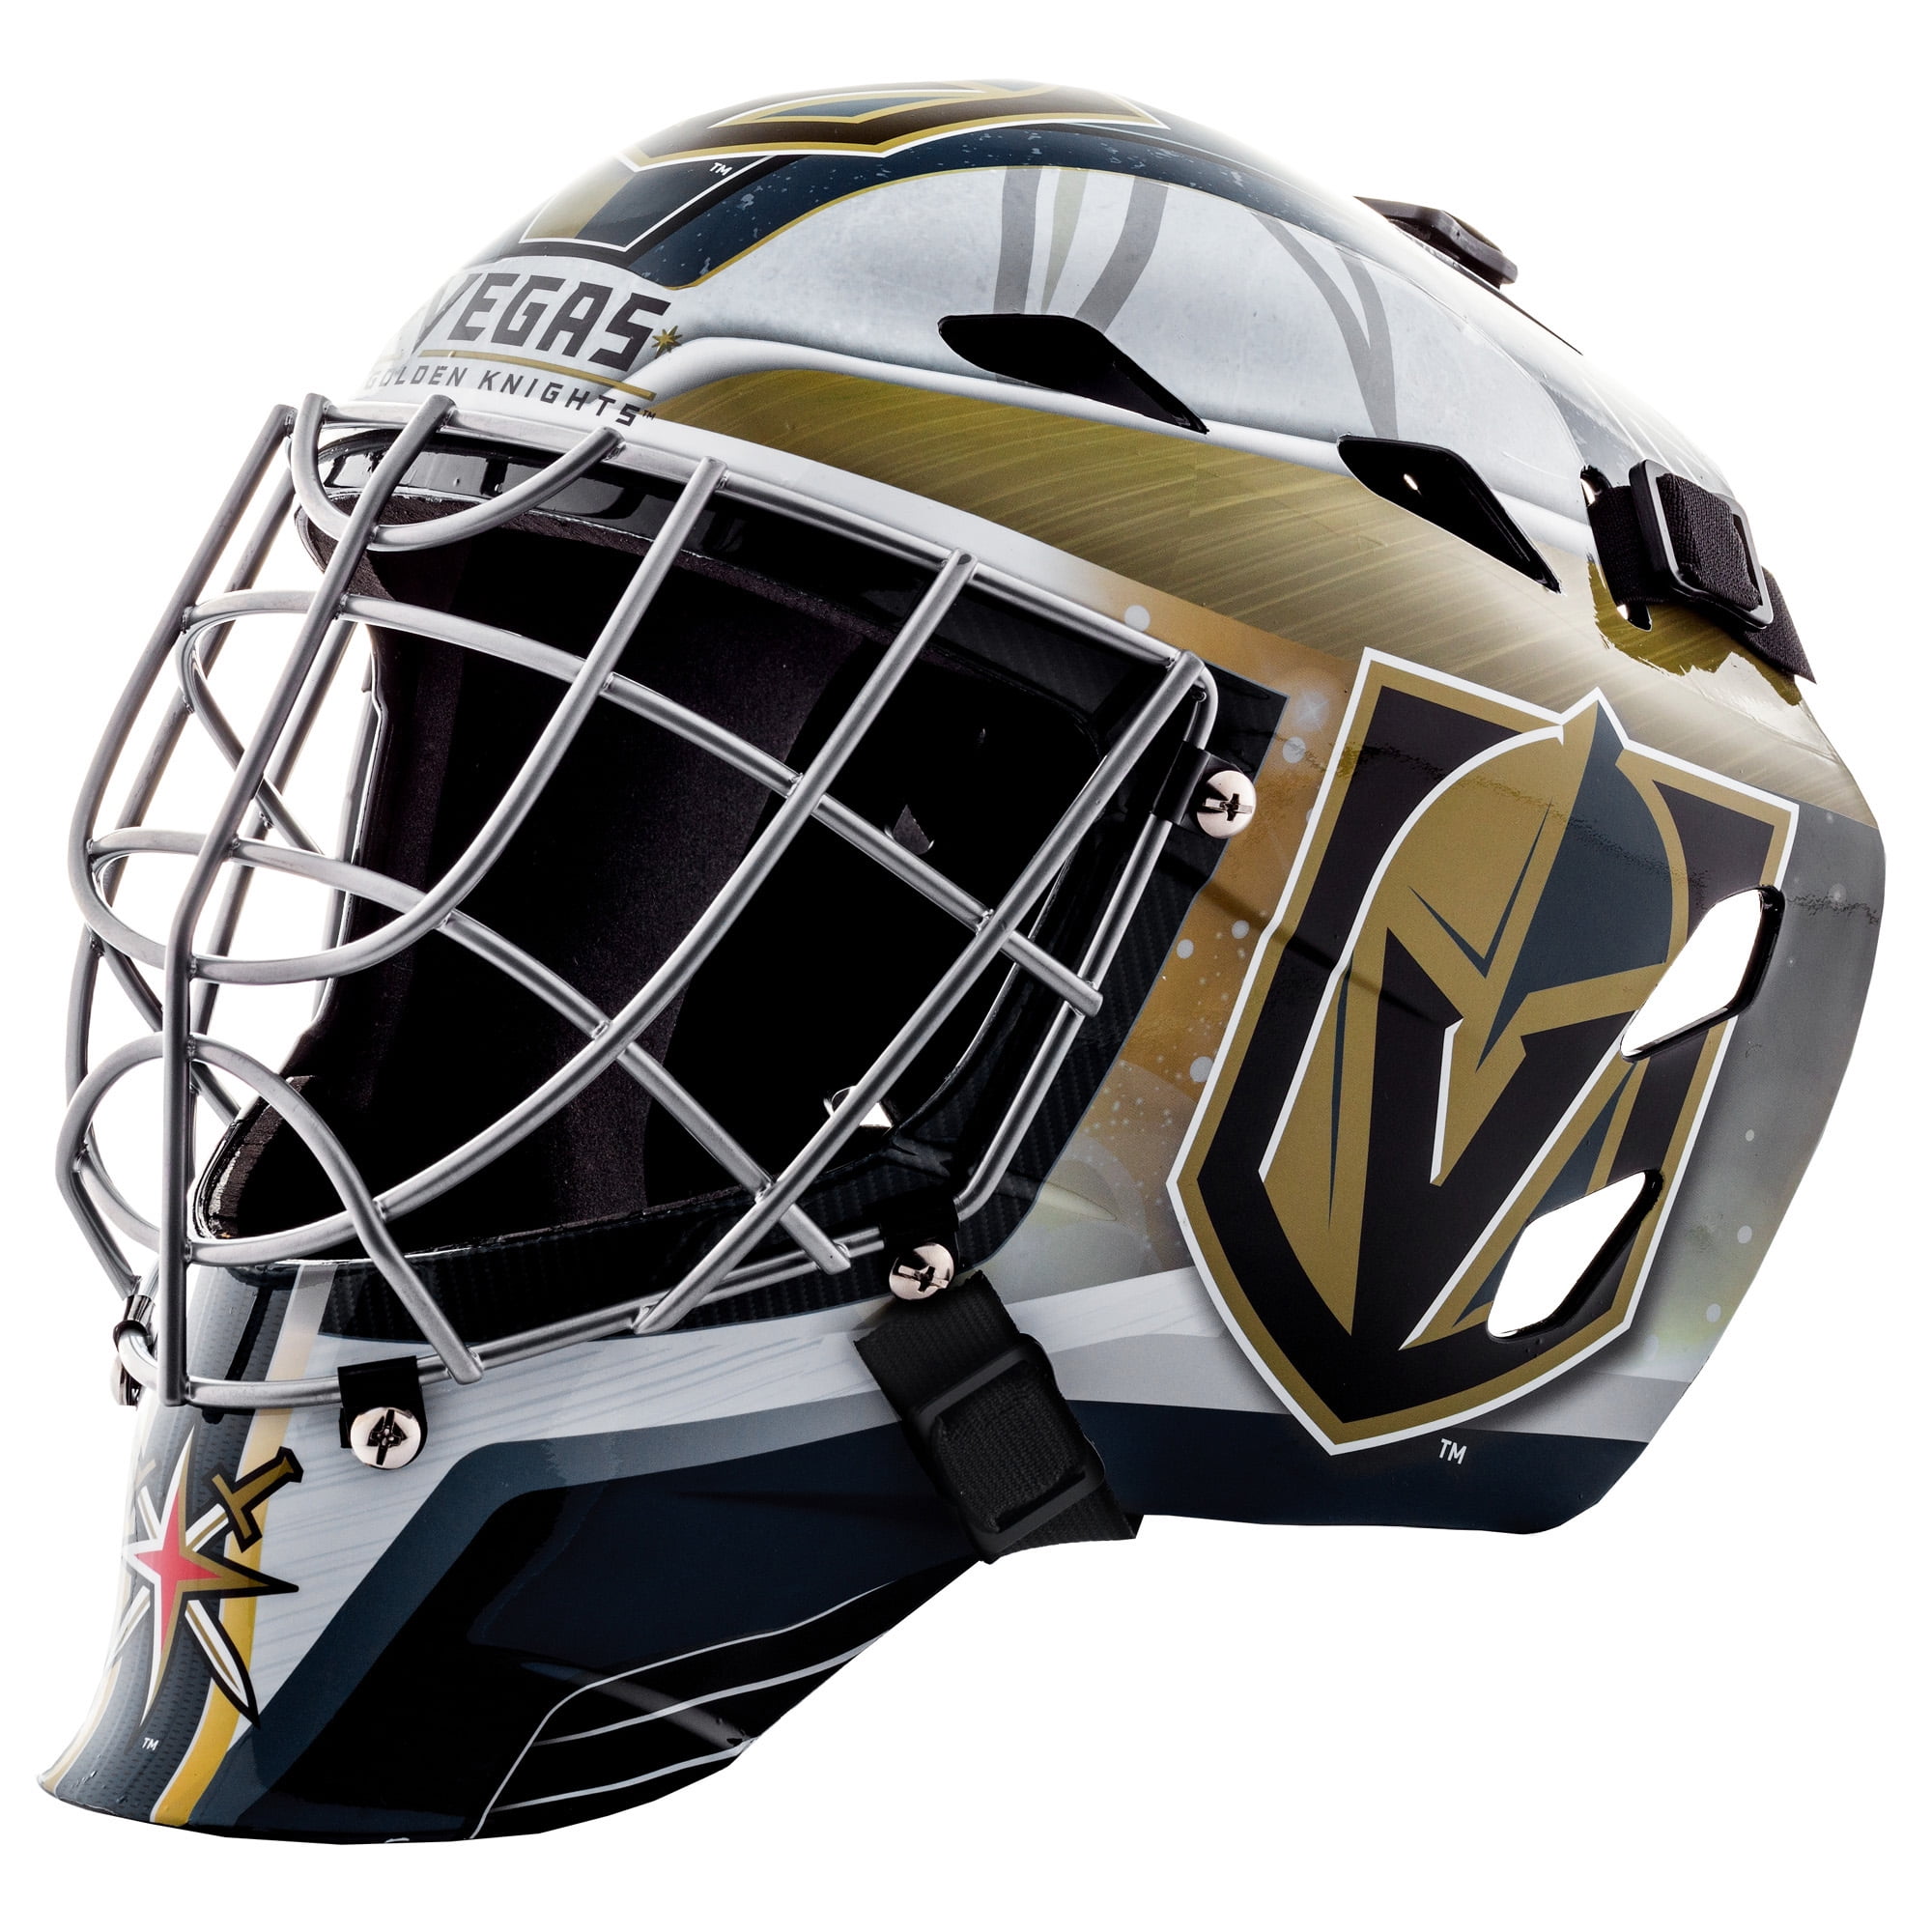 Dallas Stars Mini Goalie Mask